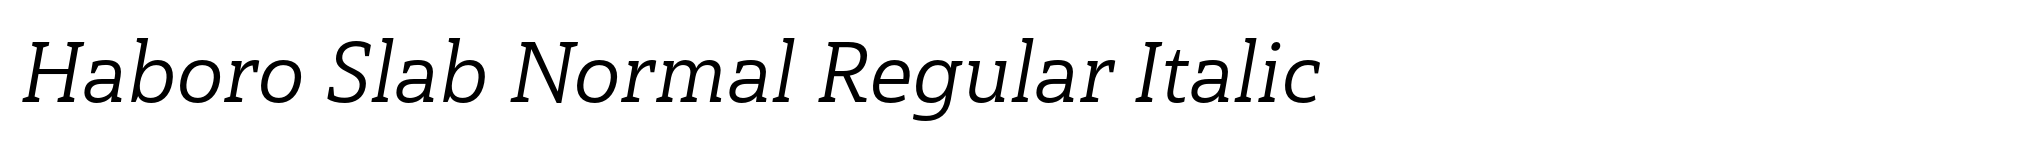 Haboro Slab Normal Regular Italic image